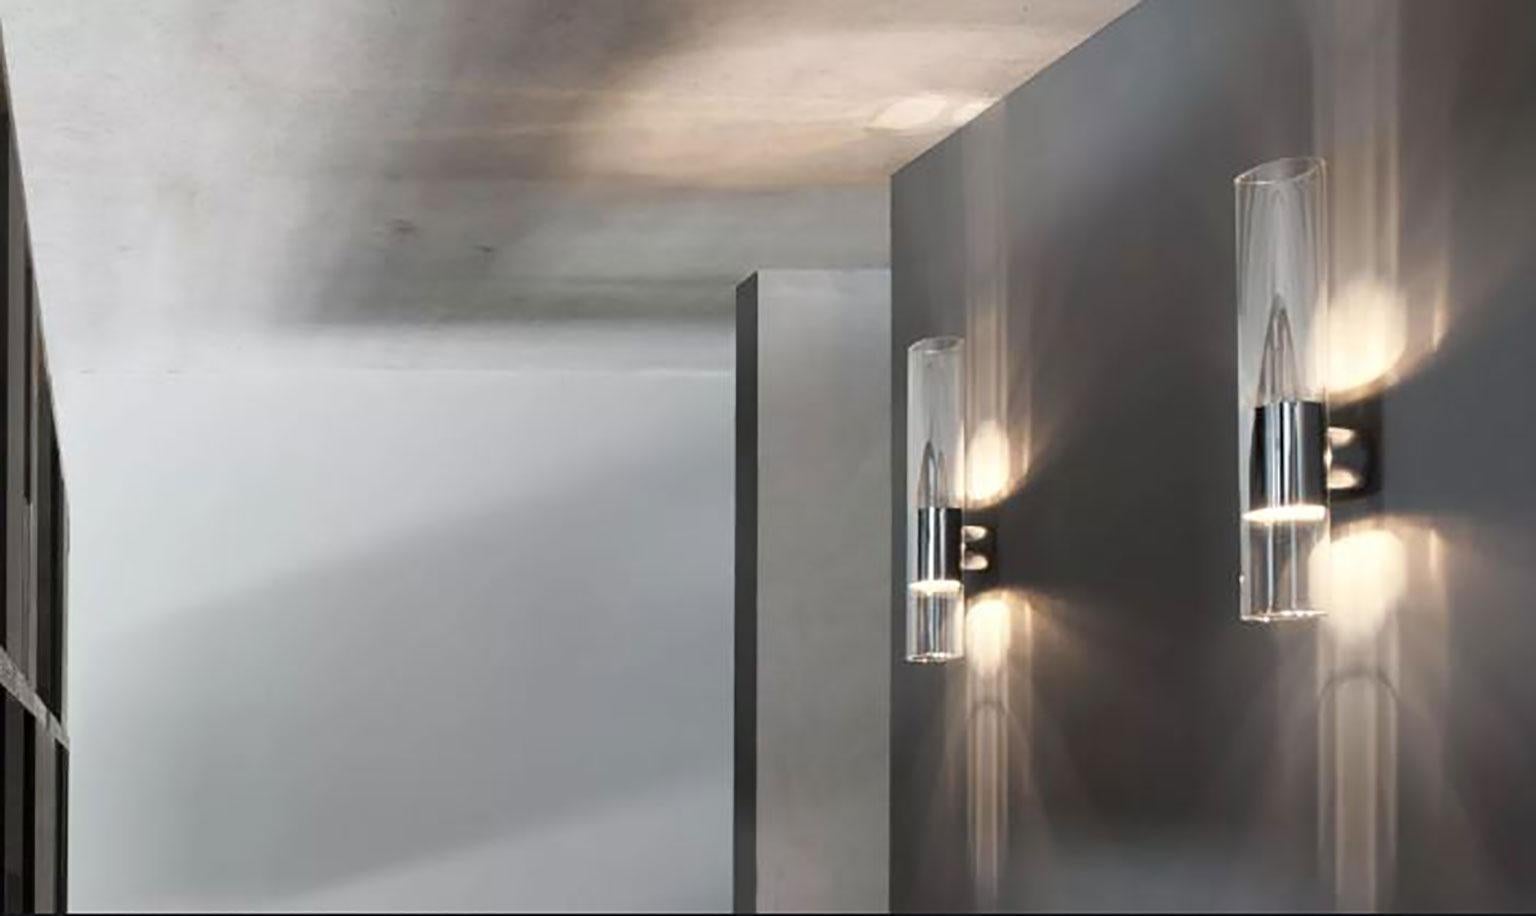 Applique Line conçue par Francesco Rota pour Oluce. Le design de cette lampe est parfaitement minimaliste. La lampe est fabriquée en verre Pyrex ovale spécial. La structure en aluminium au centre de la lampe se fixe au mur. En outre, la structure en